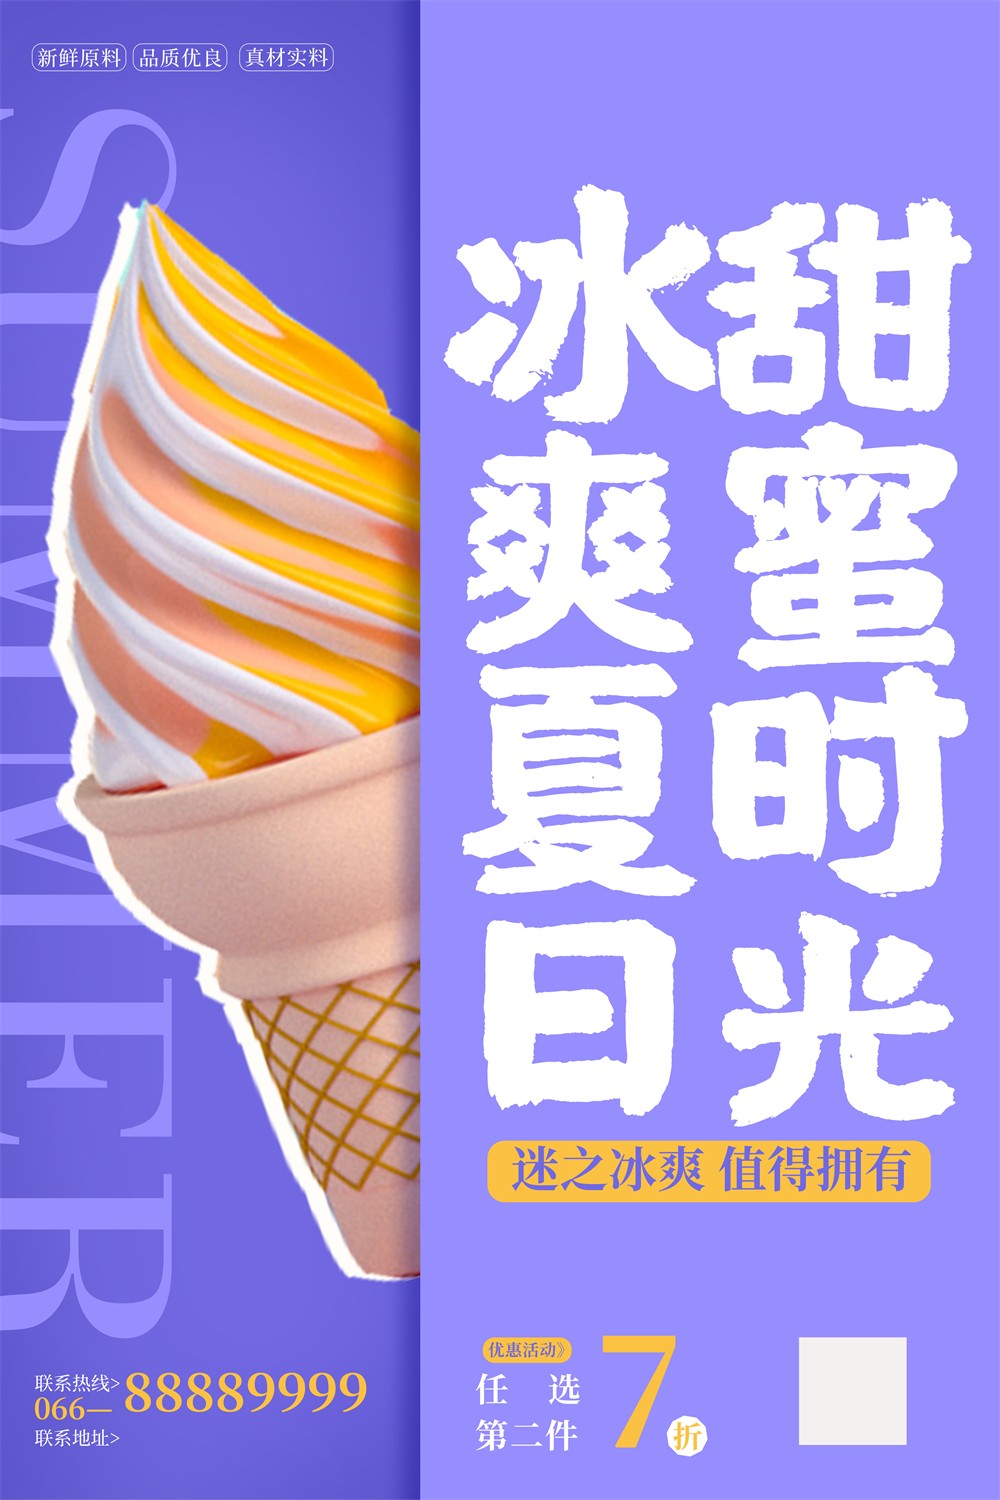 紫色创意冰爽夏日冰淇淋活动海报